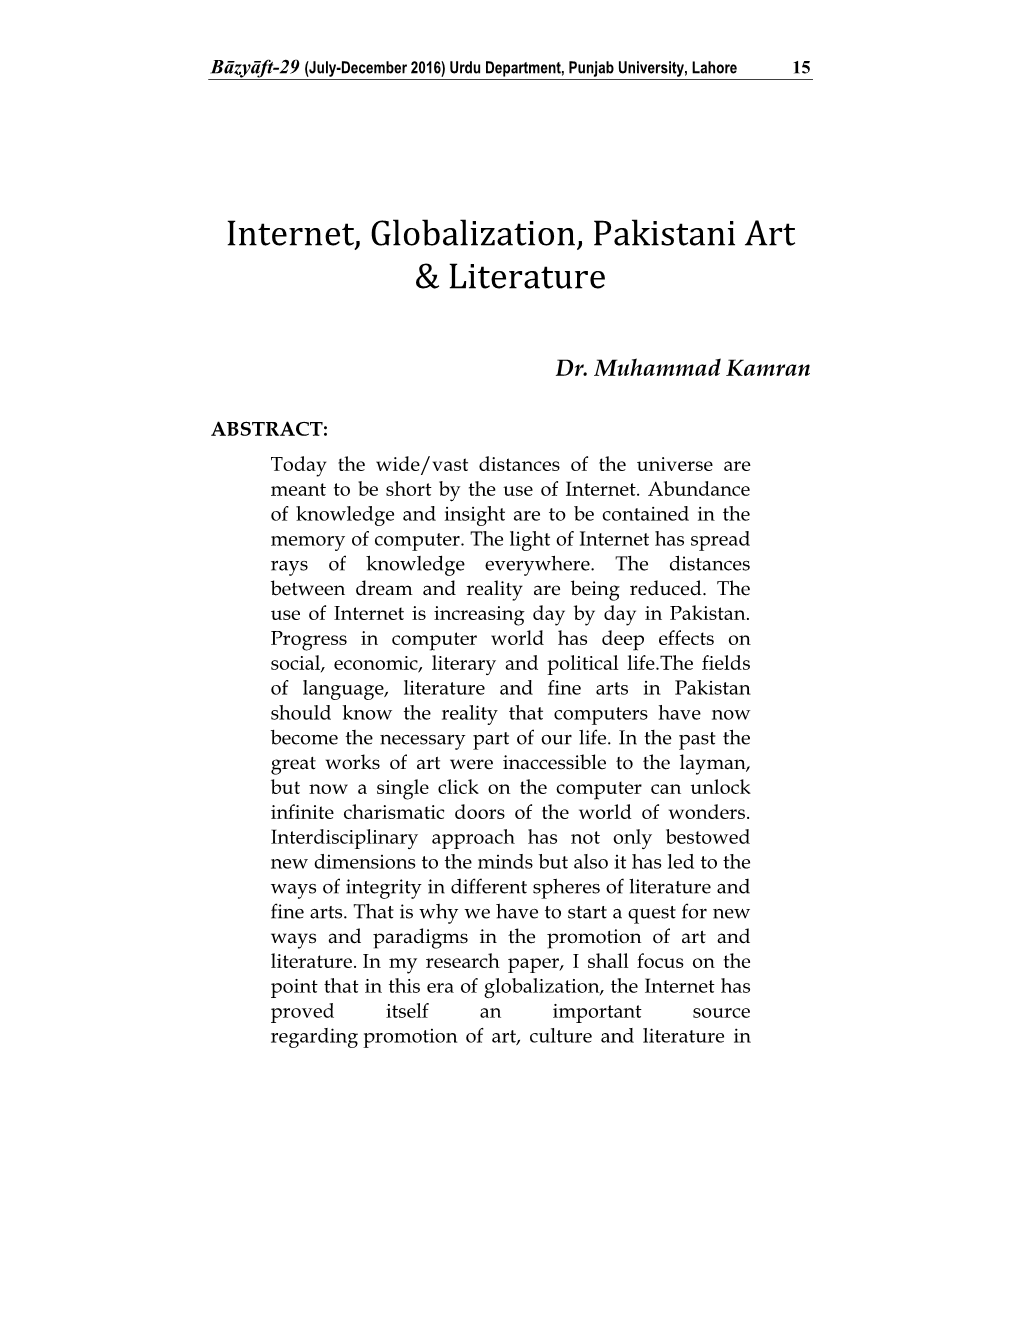 Internet, Globalization, Pakistani Art & Literature